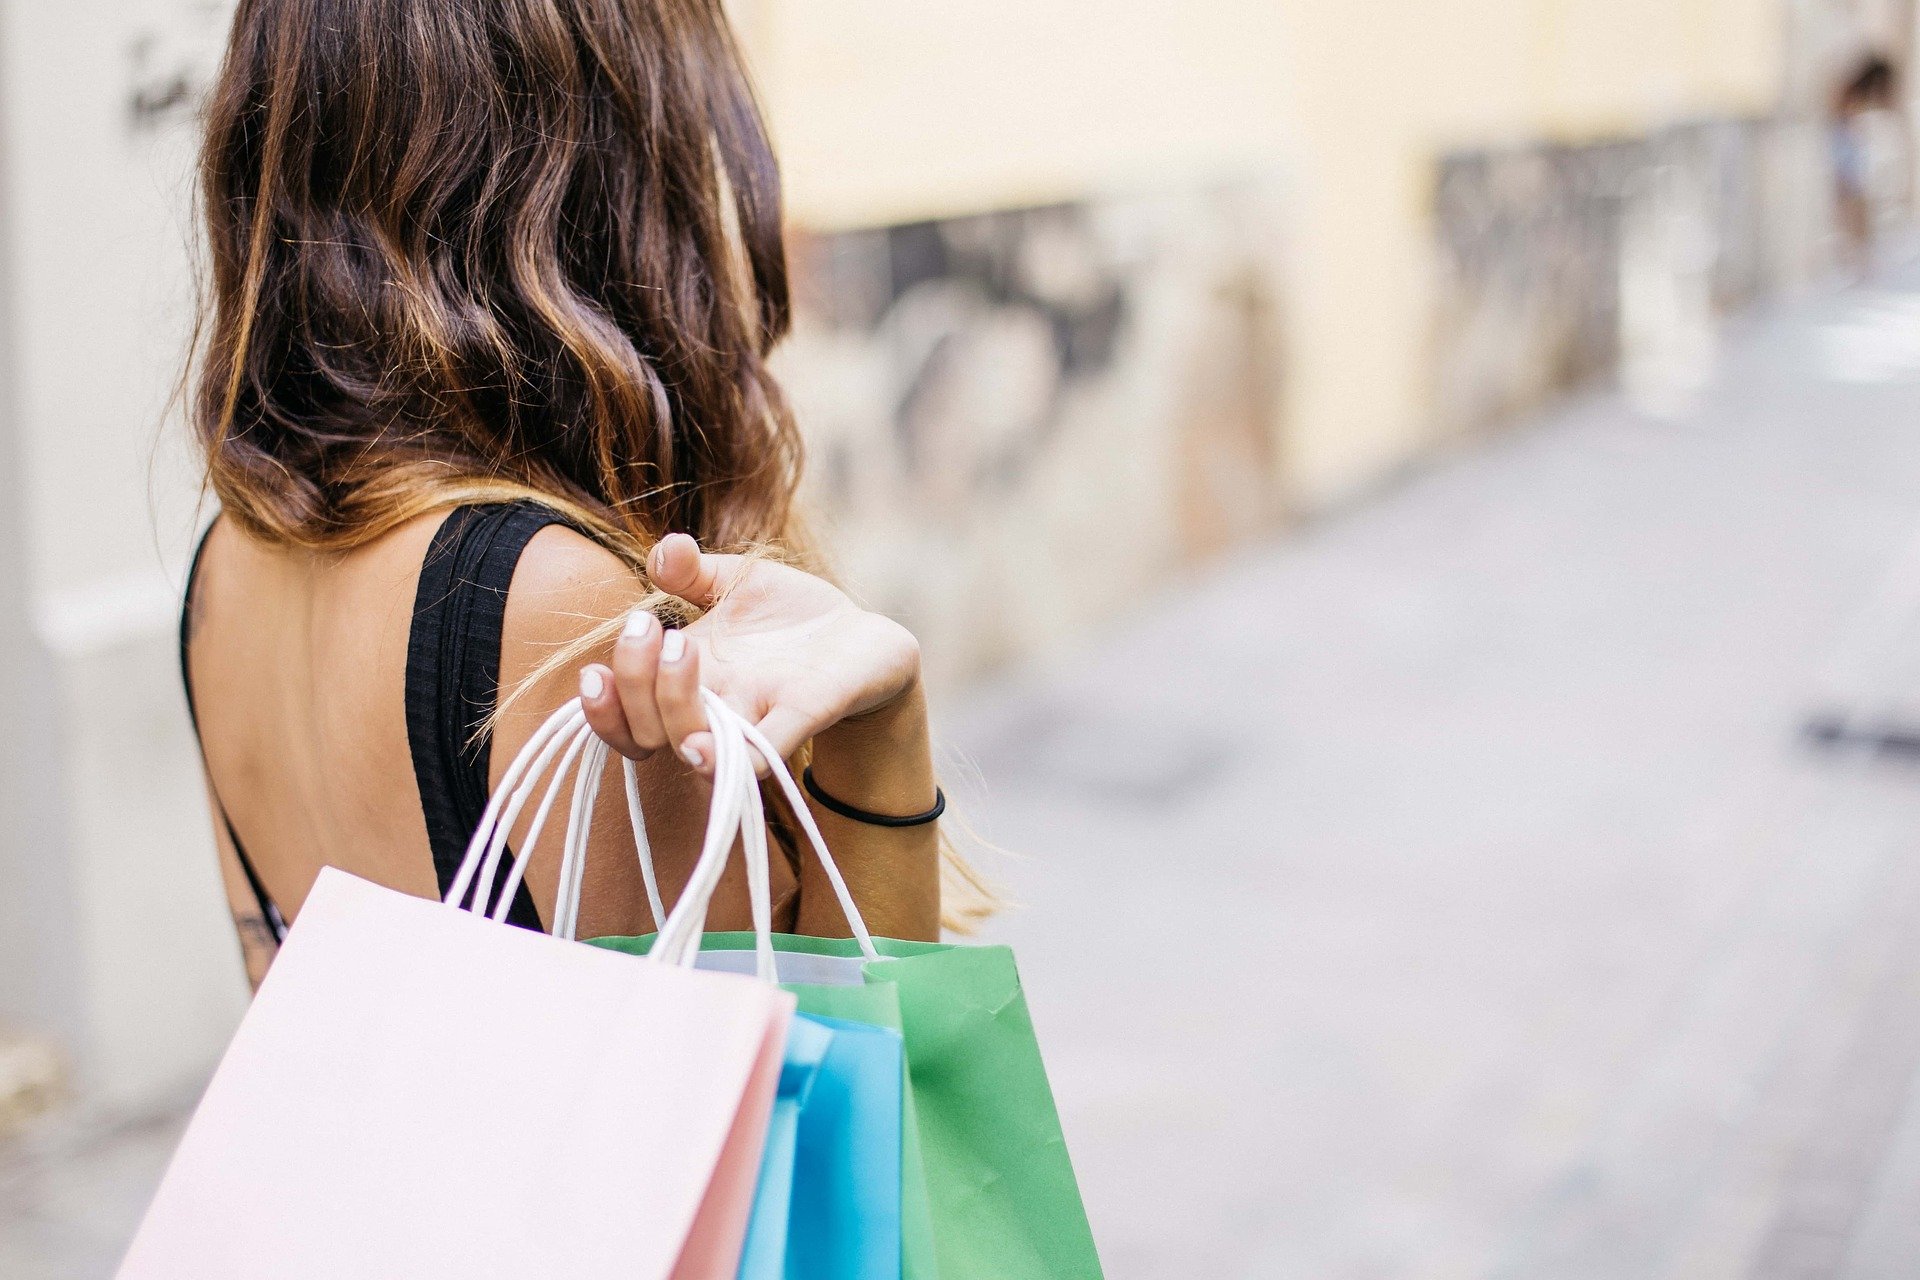 Consumer retail sales surge